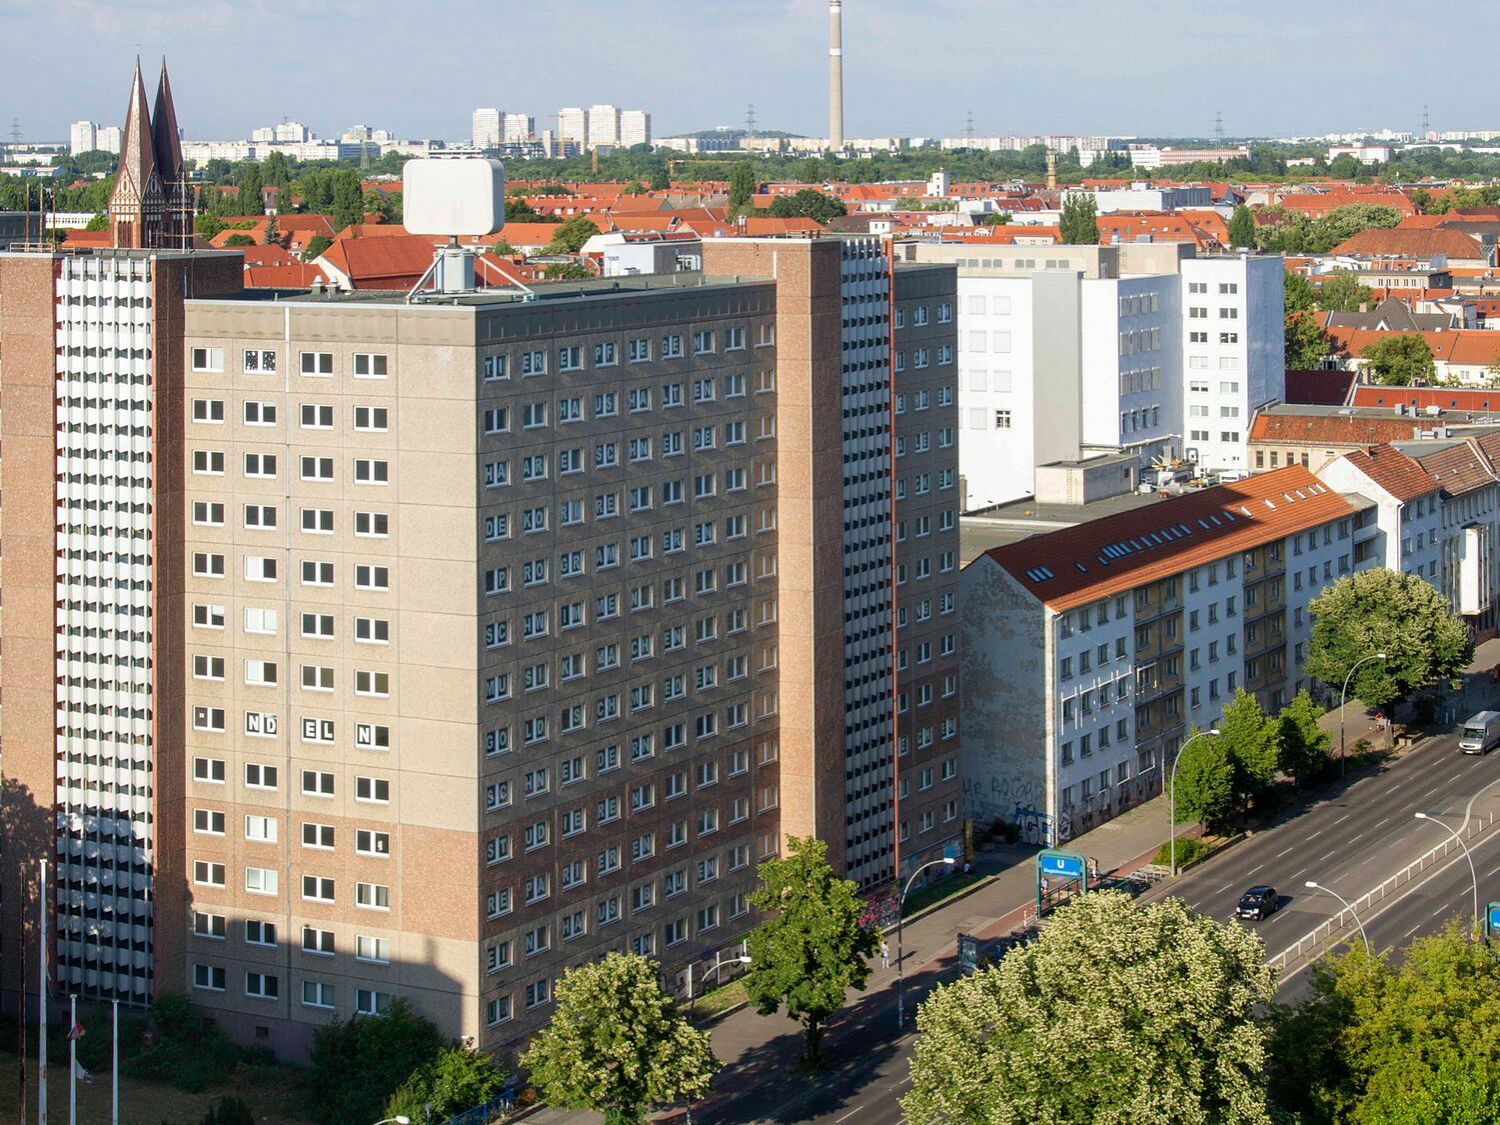 Blick auf das Gelände der ehemaligen Stasizentrale an der Frankfurter Allee